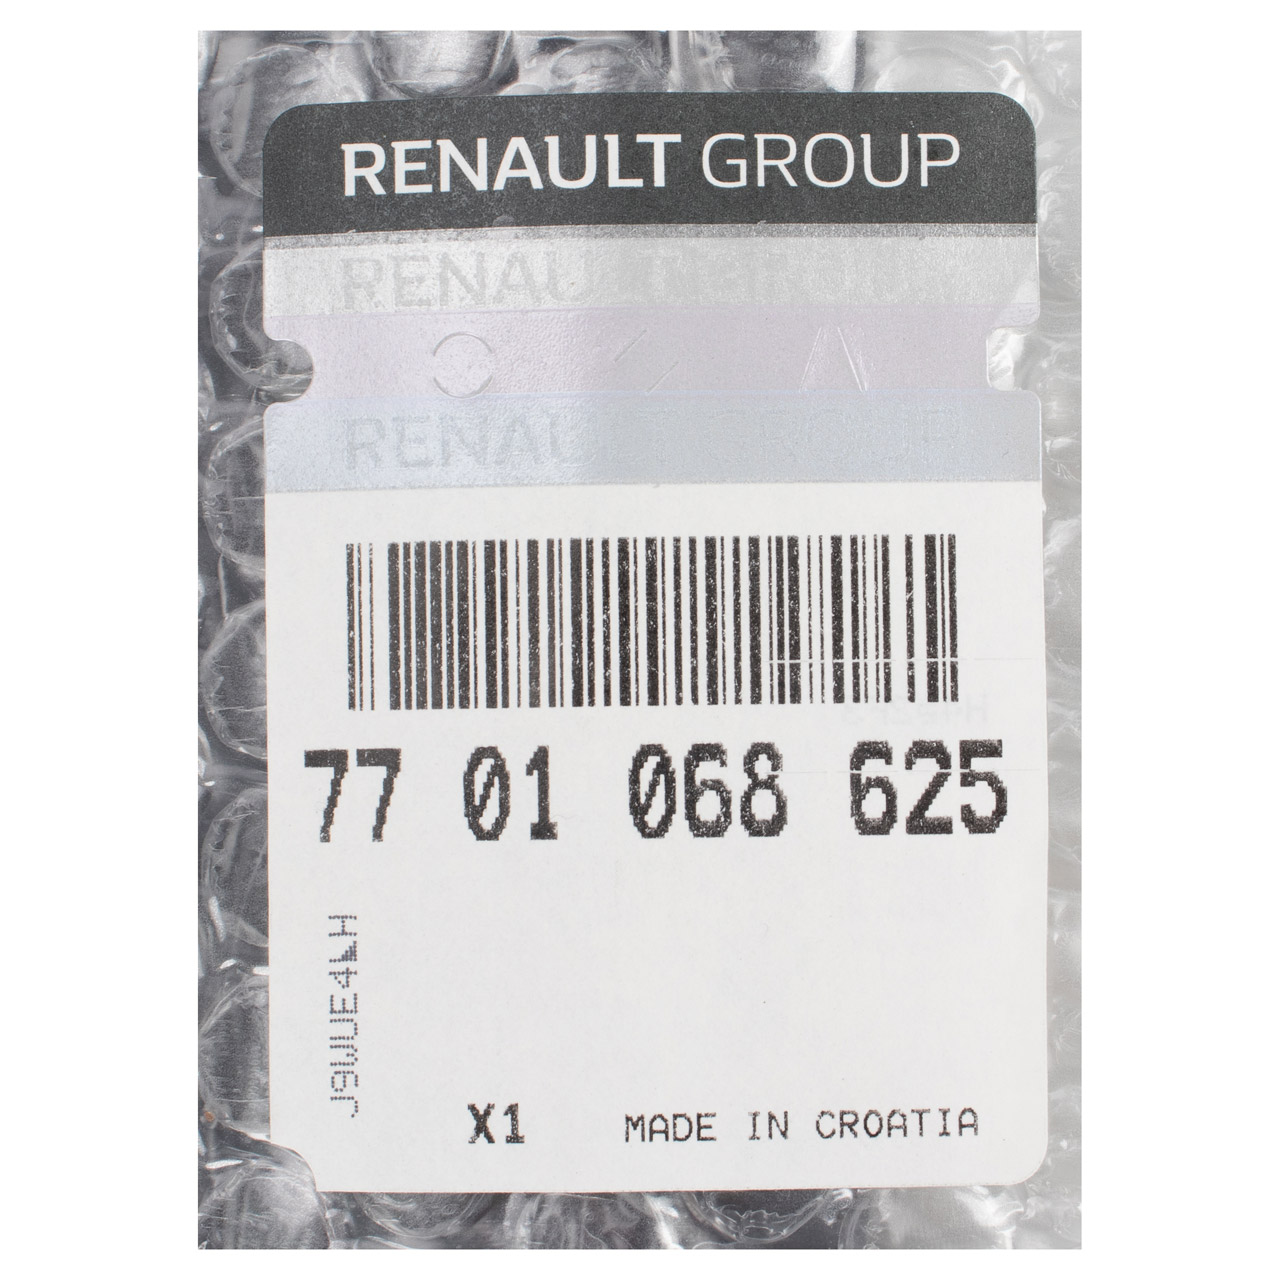 ORIGINAL Renault Zierleiste Türleiste Schwarz Twingo 2 vorne links 7701068625